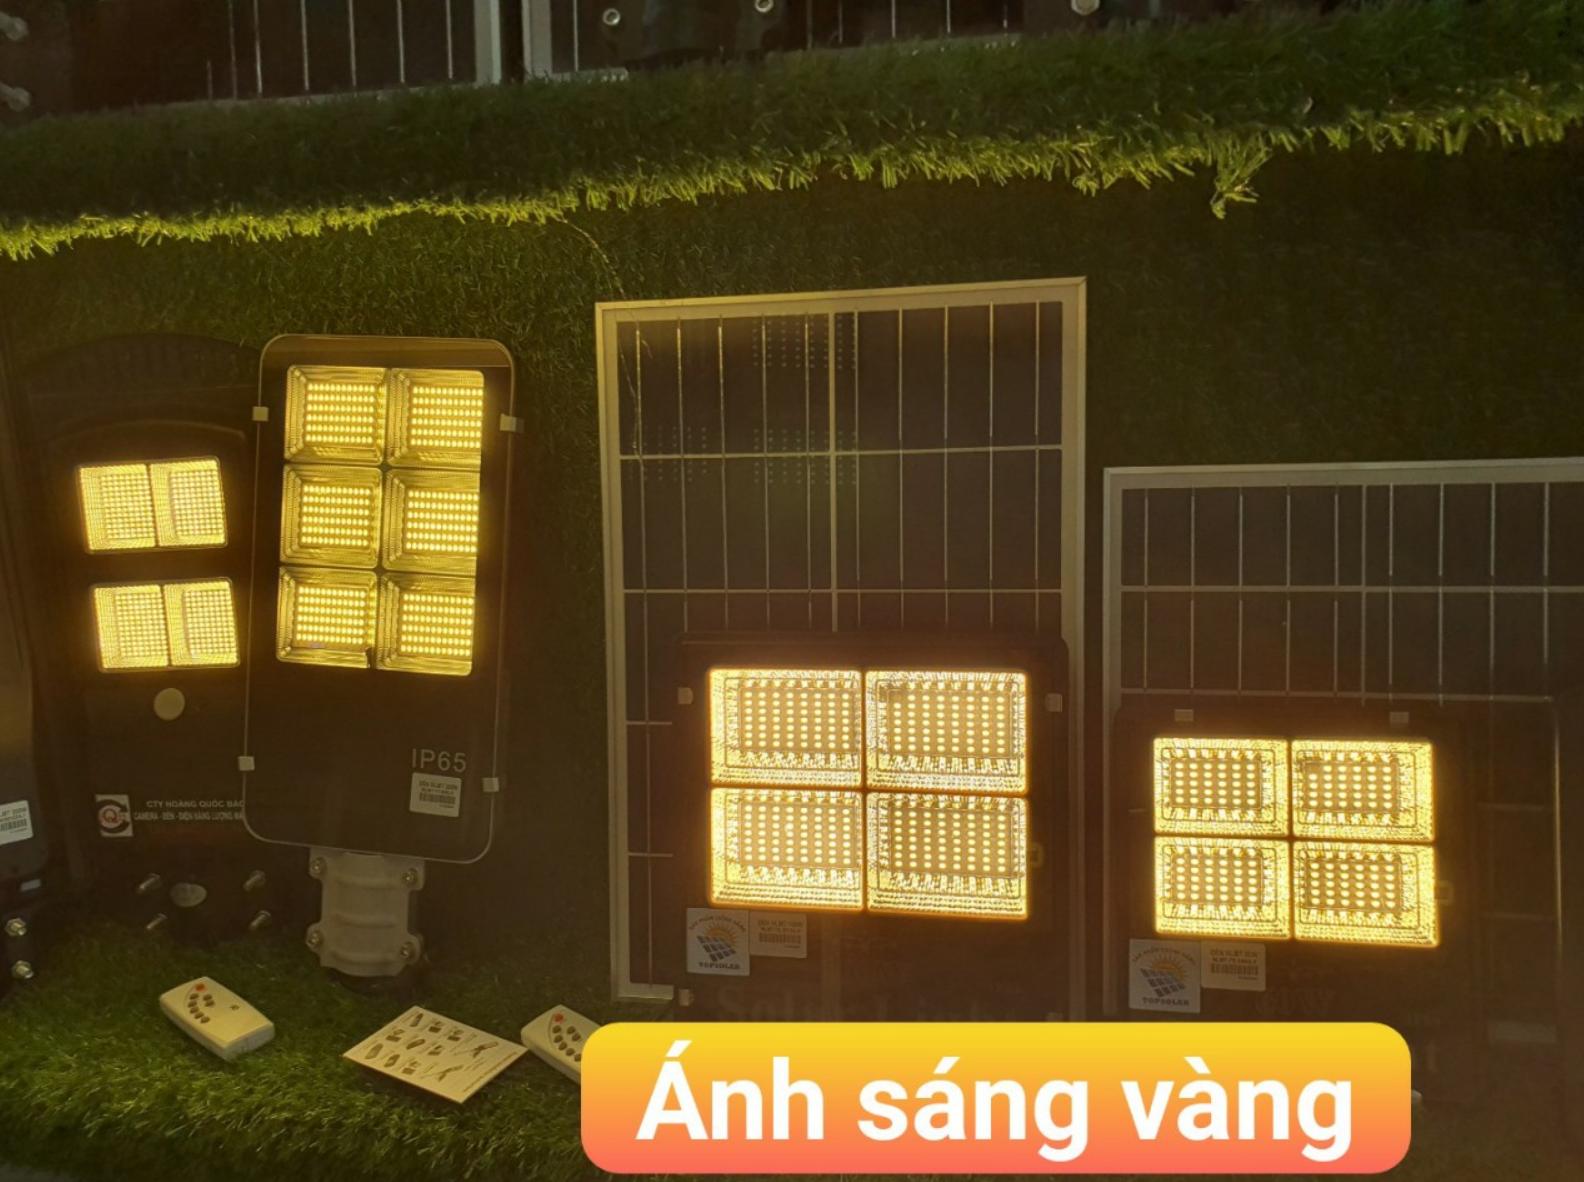 Đèn năng lượng mặt trời 60w - JD8860 chính hãng Đèn năng lượng mặt trời 60w VC 8860 bao gồm 1 đèn và 1 tấm pin có kích ... điện từ tấm Pin, chuyển hóa năng lượng mặt trời thành năng lượng điện tiêu thụ.